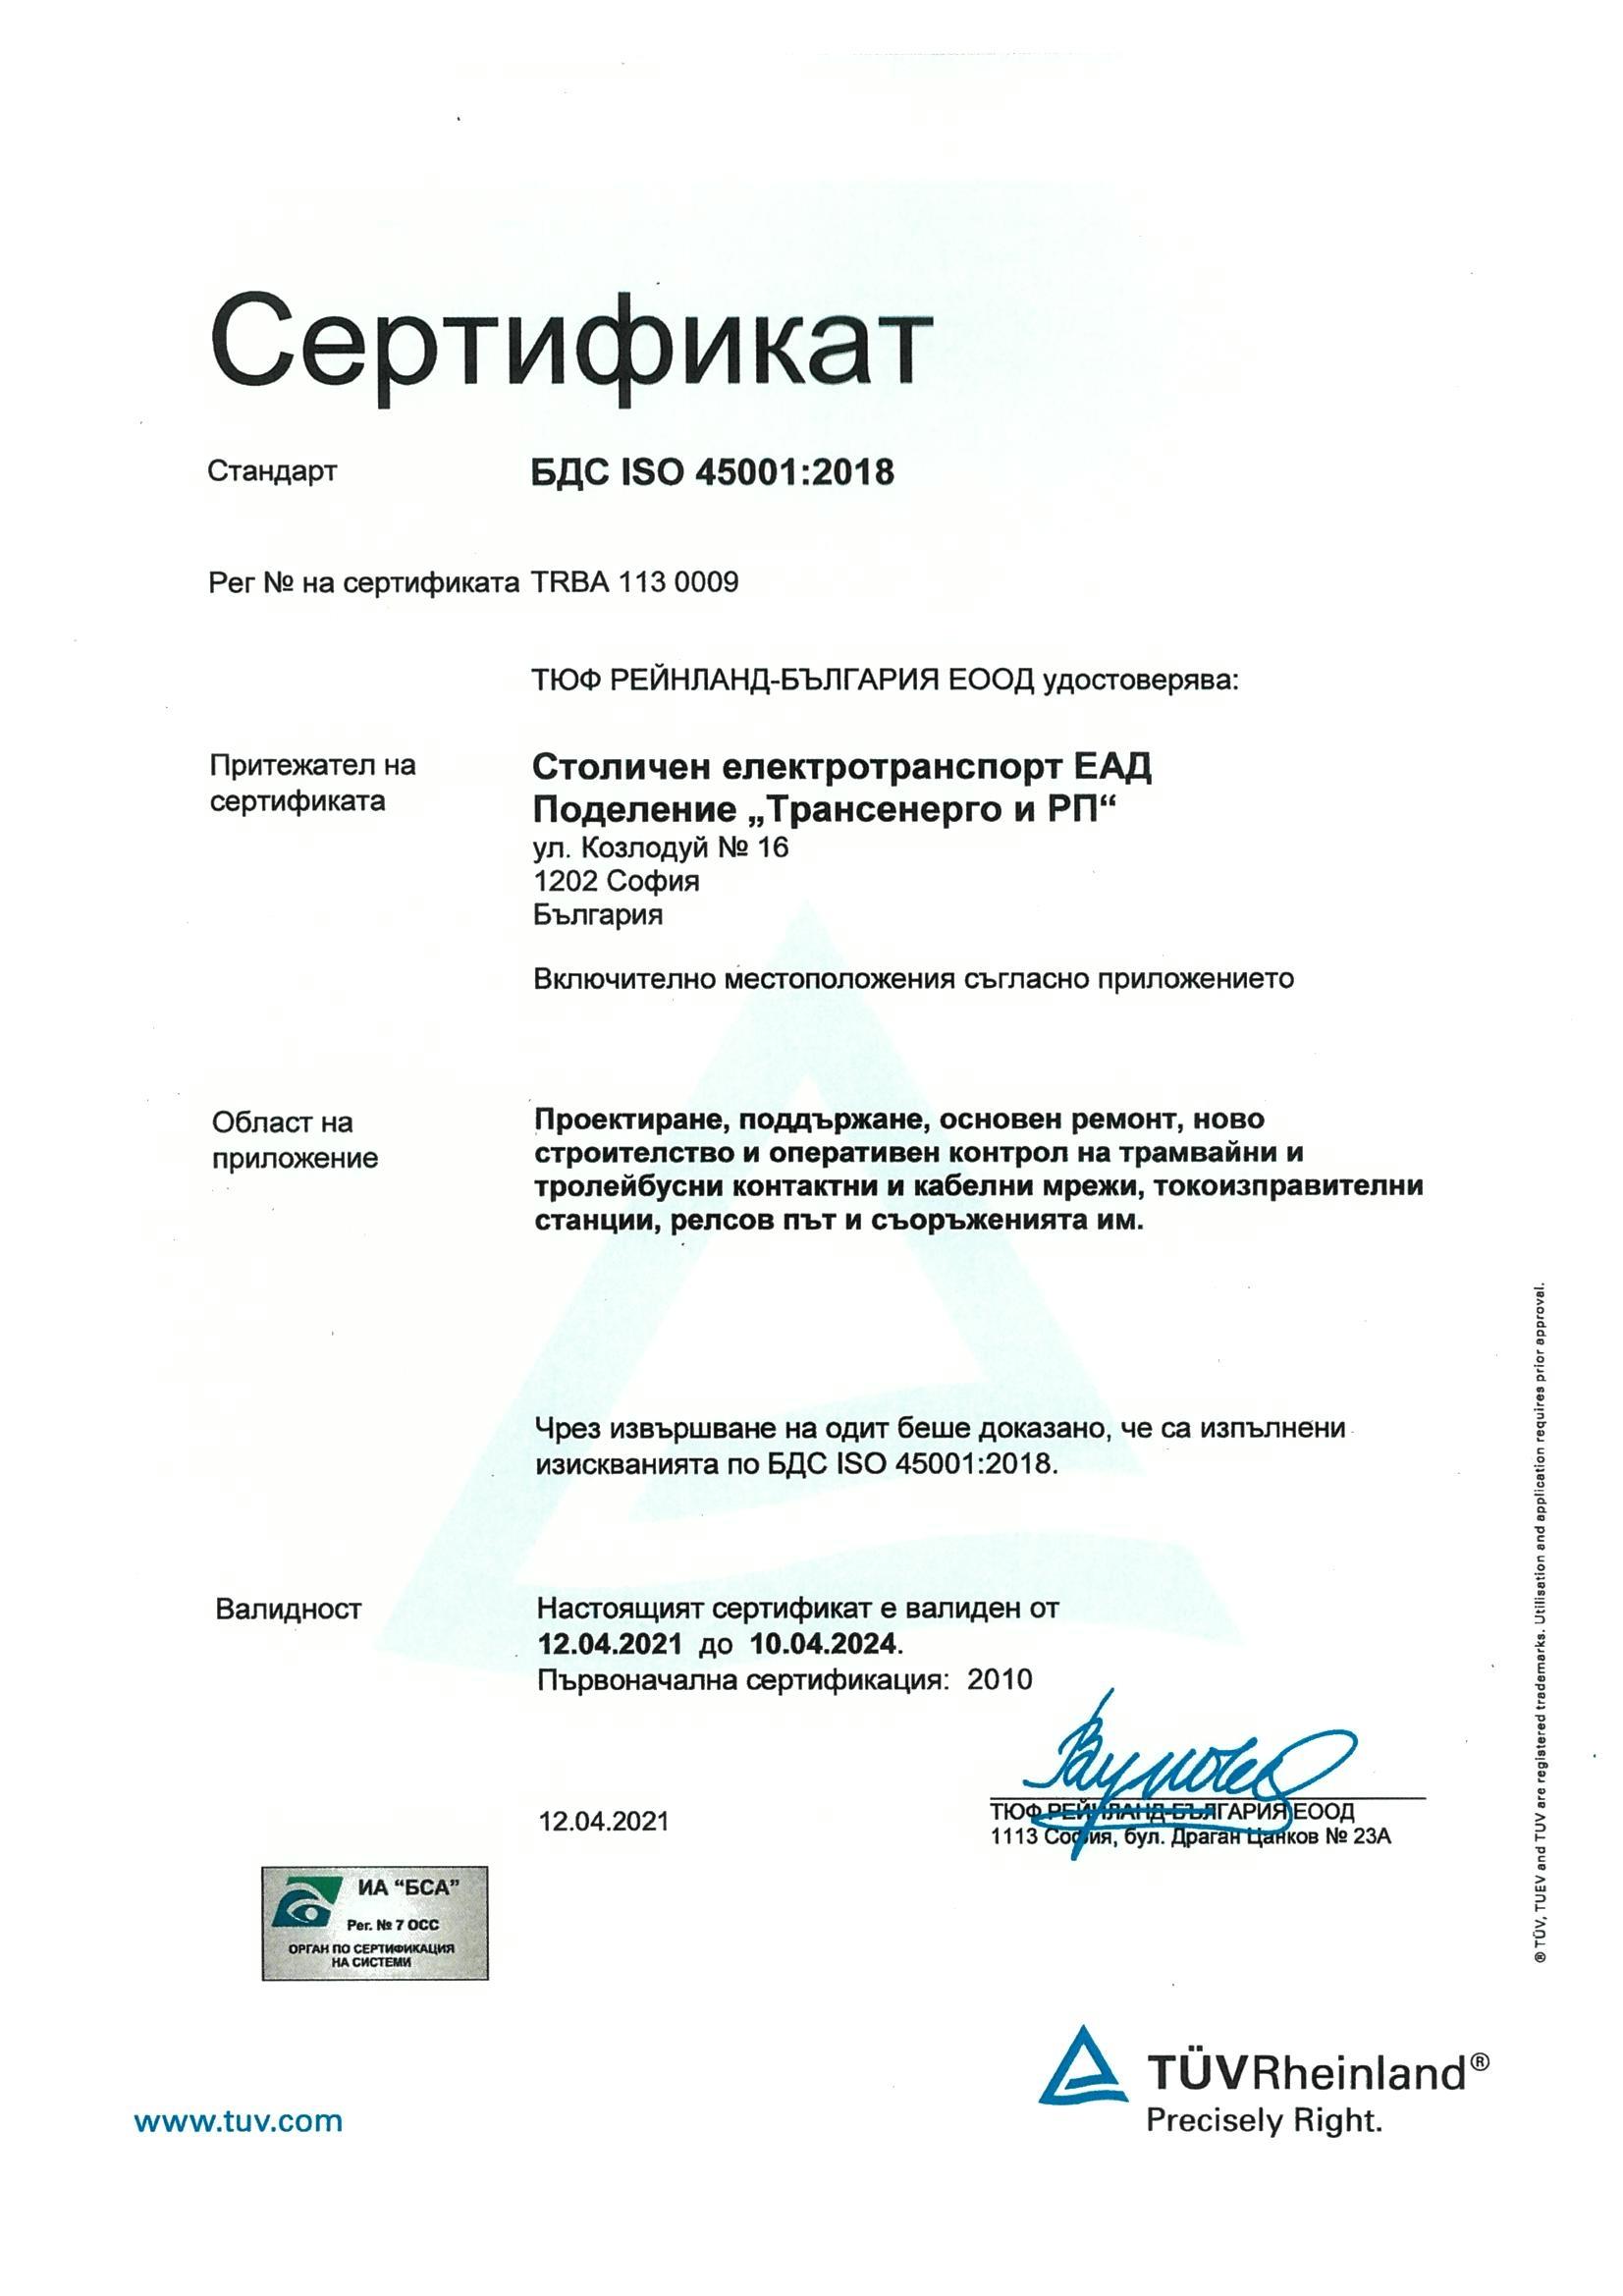  EN ISO 45001:2018